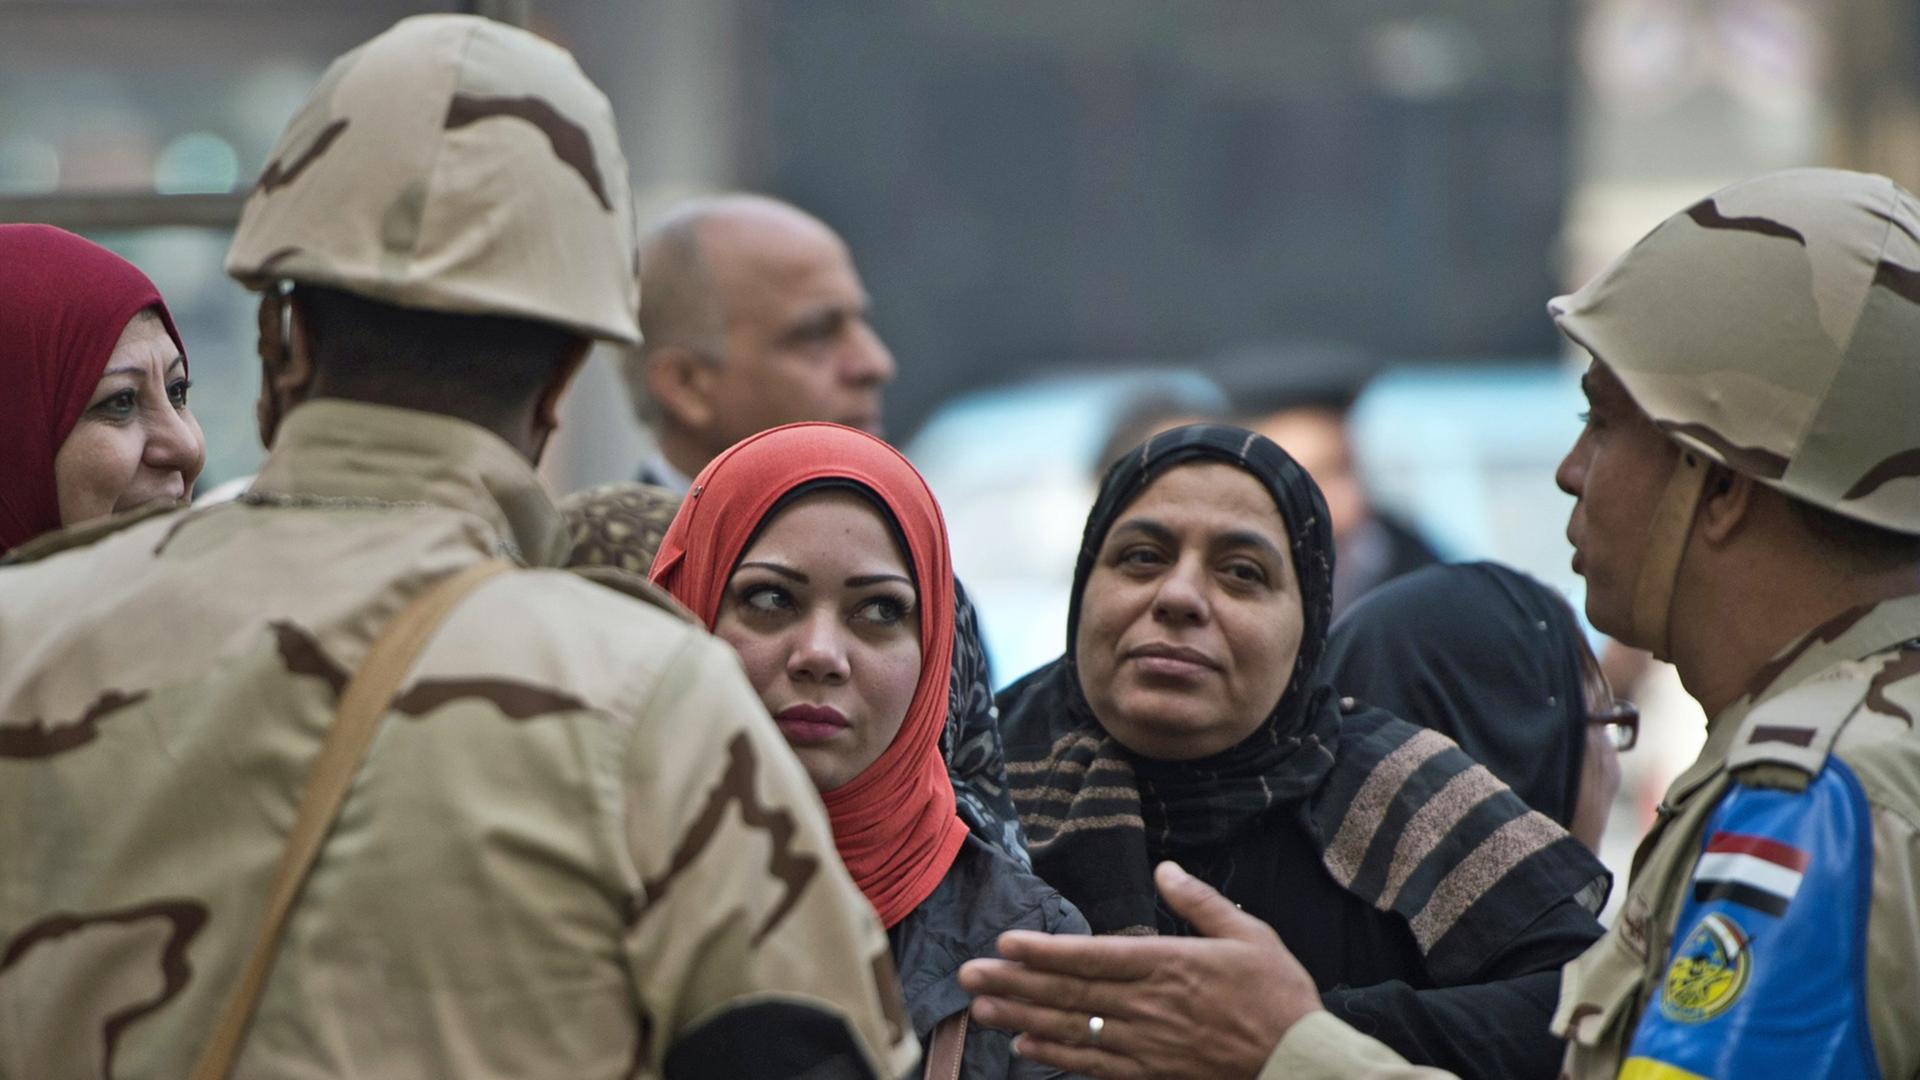 Soldaten und Frauen gestikulieren vor einem Wahllokal in Ägyptens Hauptstadt Kairo